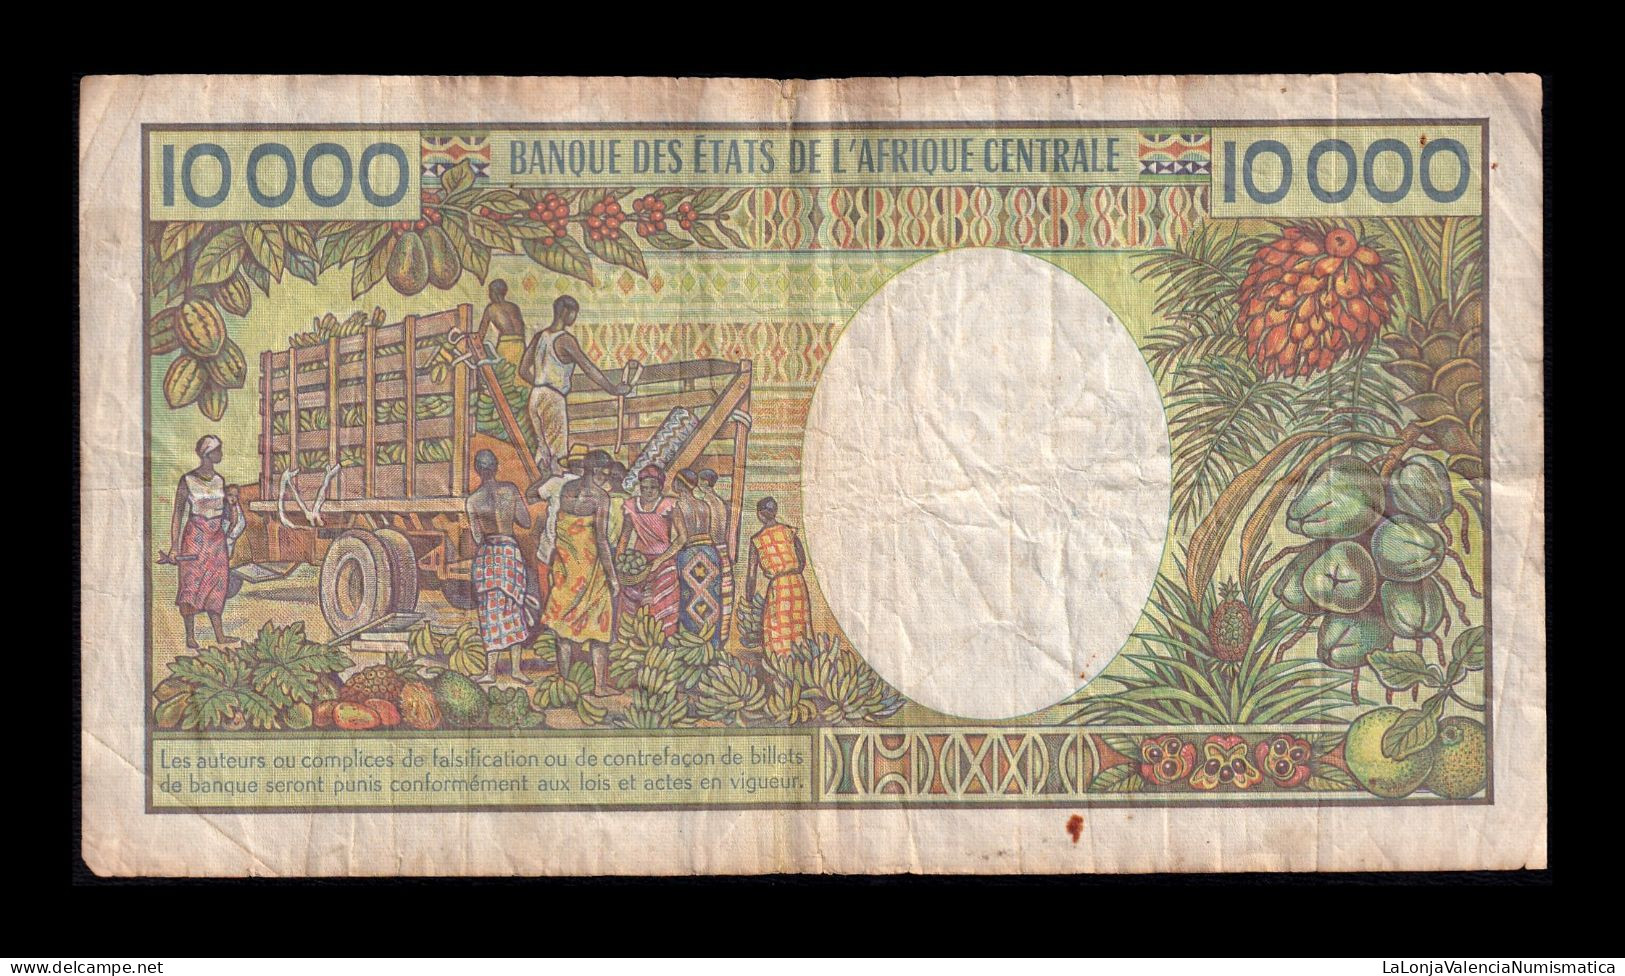 Congo 10000 Francs 1992 Pick 13 Bc/Mbc F/Vf - République Du Congo (Congo-Brazzaville)